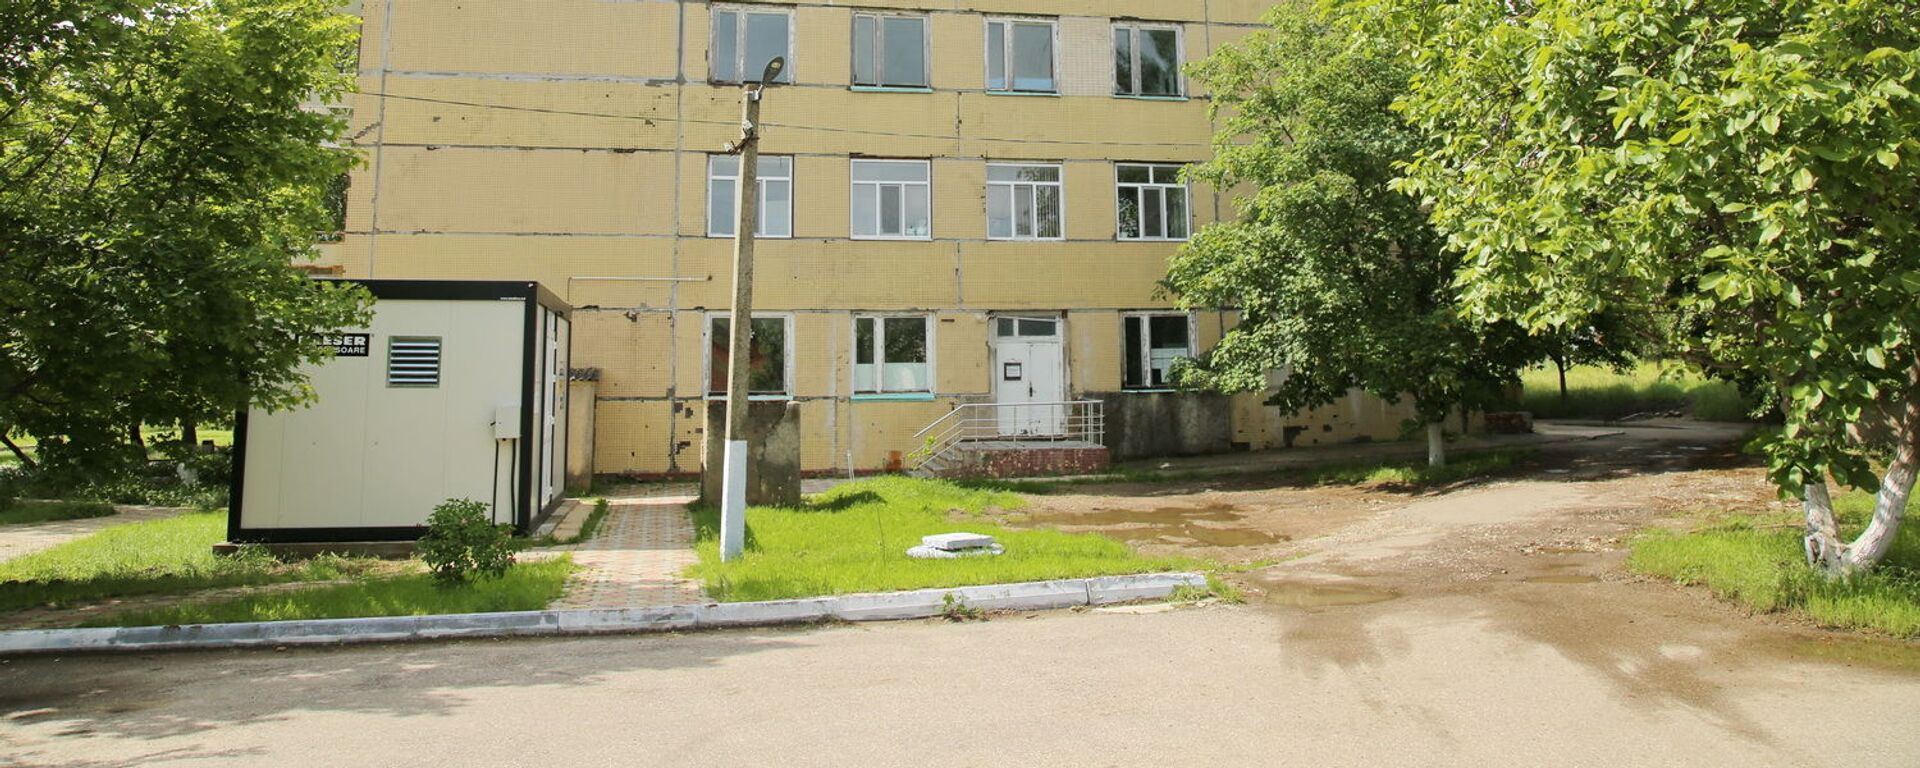 Здание инфекционного отделения ЦРБ Комрат, где размещался ковид-центр - Sputnik Молдова, 1920, 04.06.2021